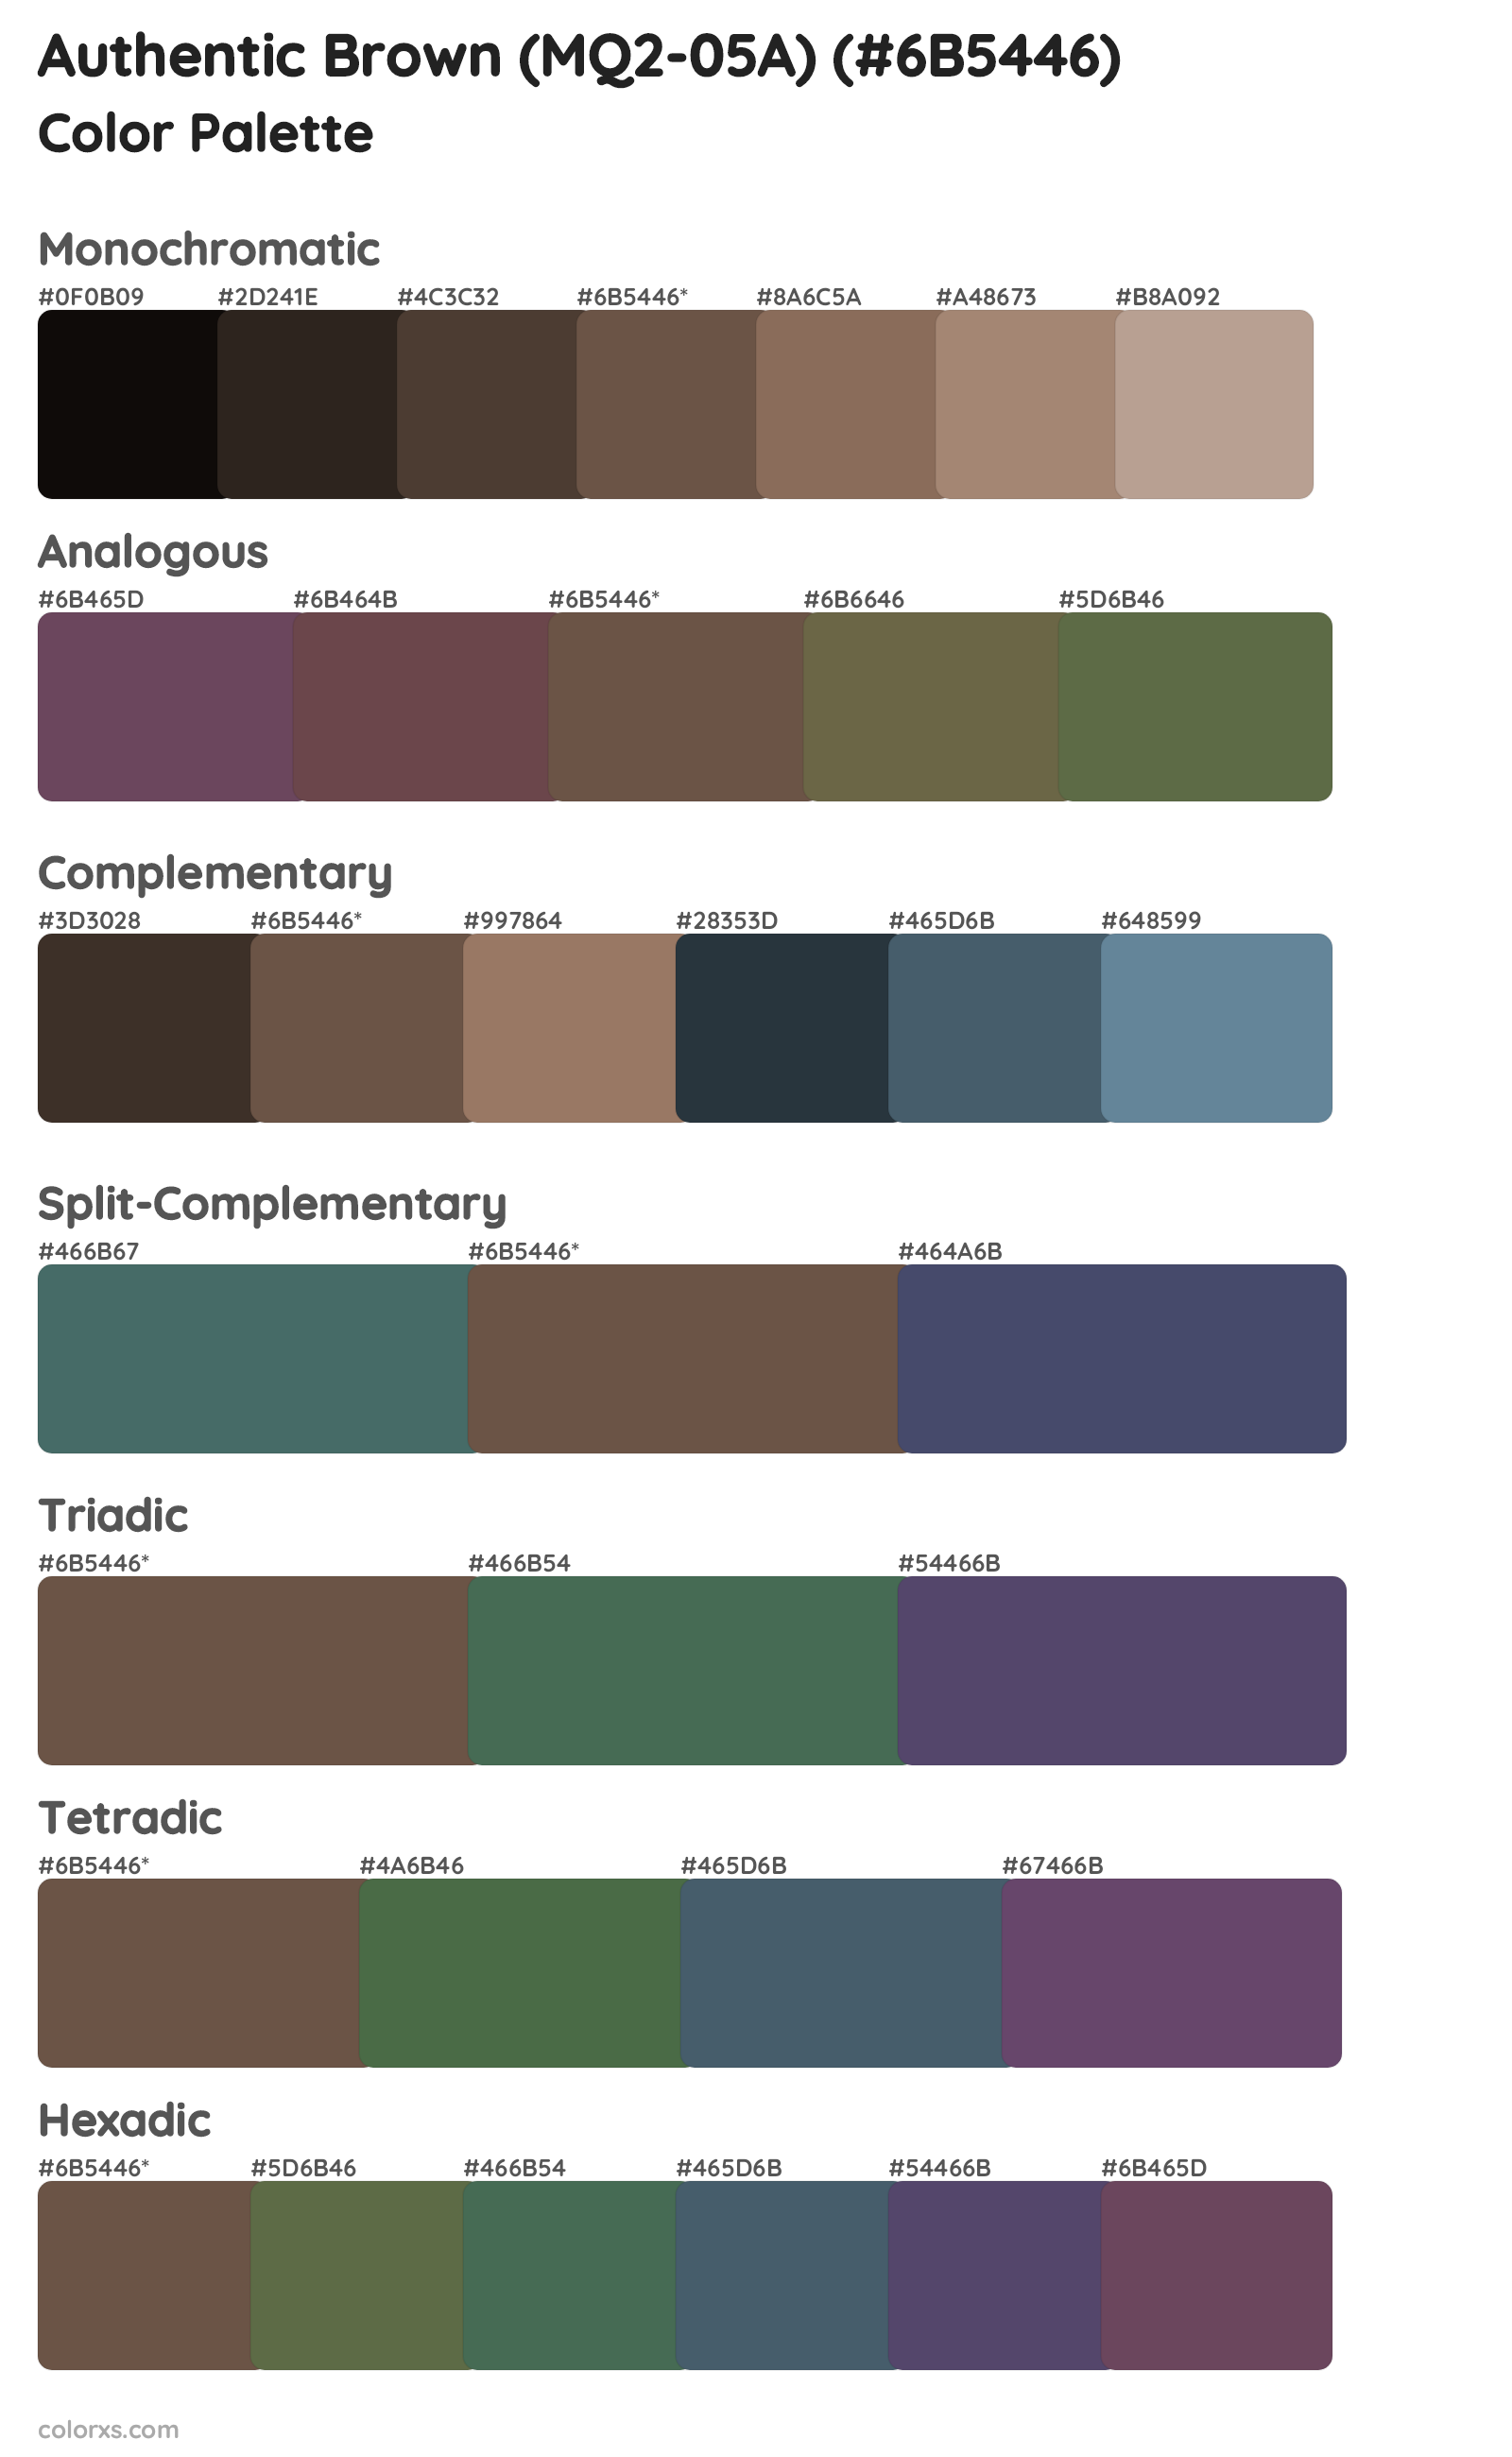 Authentic Brown (MQ2-05A) Color Scheme Palettes